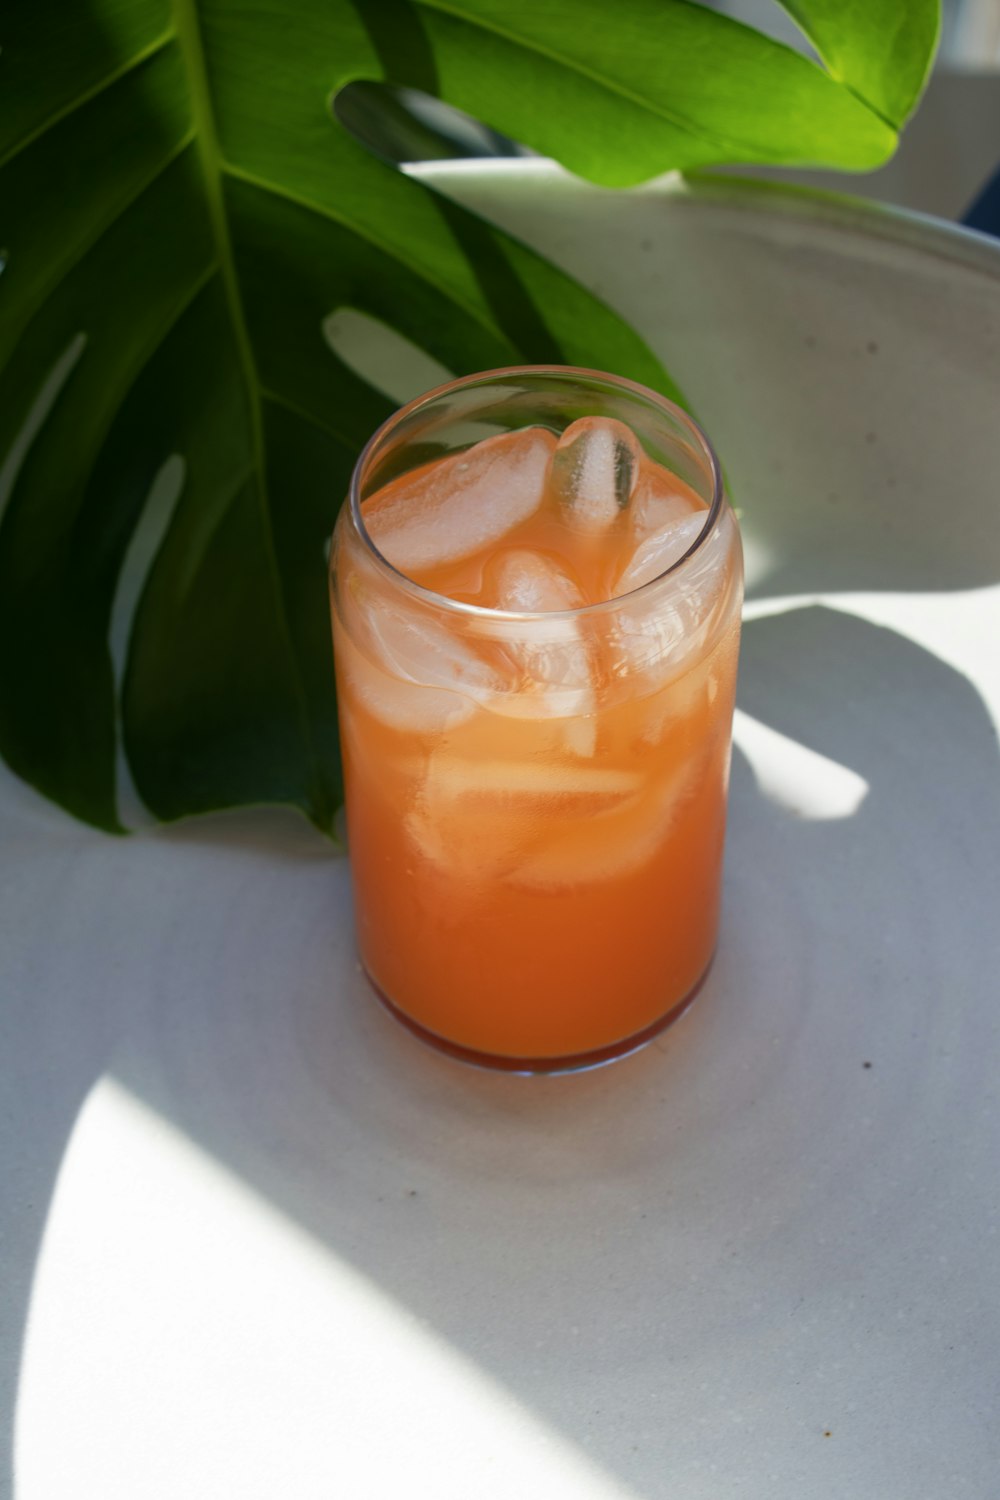 Vaso transparente con líquido naranja en plato redondo blanco